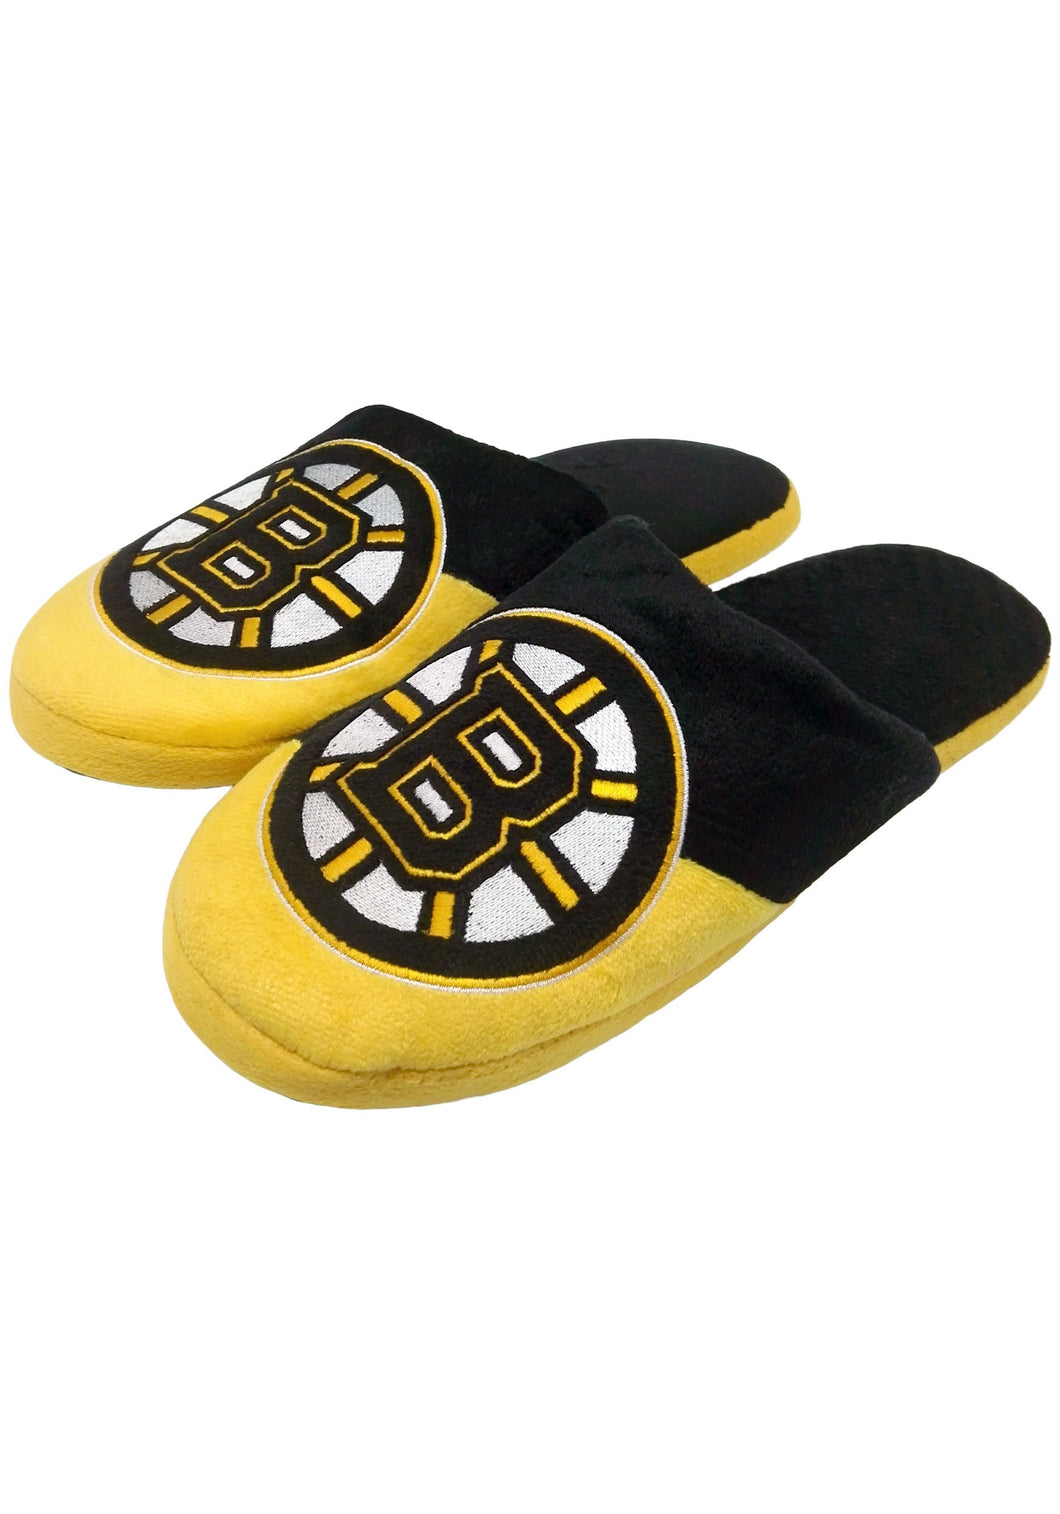 Boston Bruins NHL Colorblock Slide Slippers